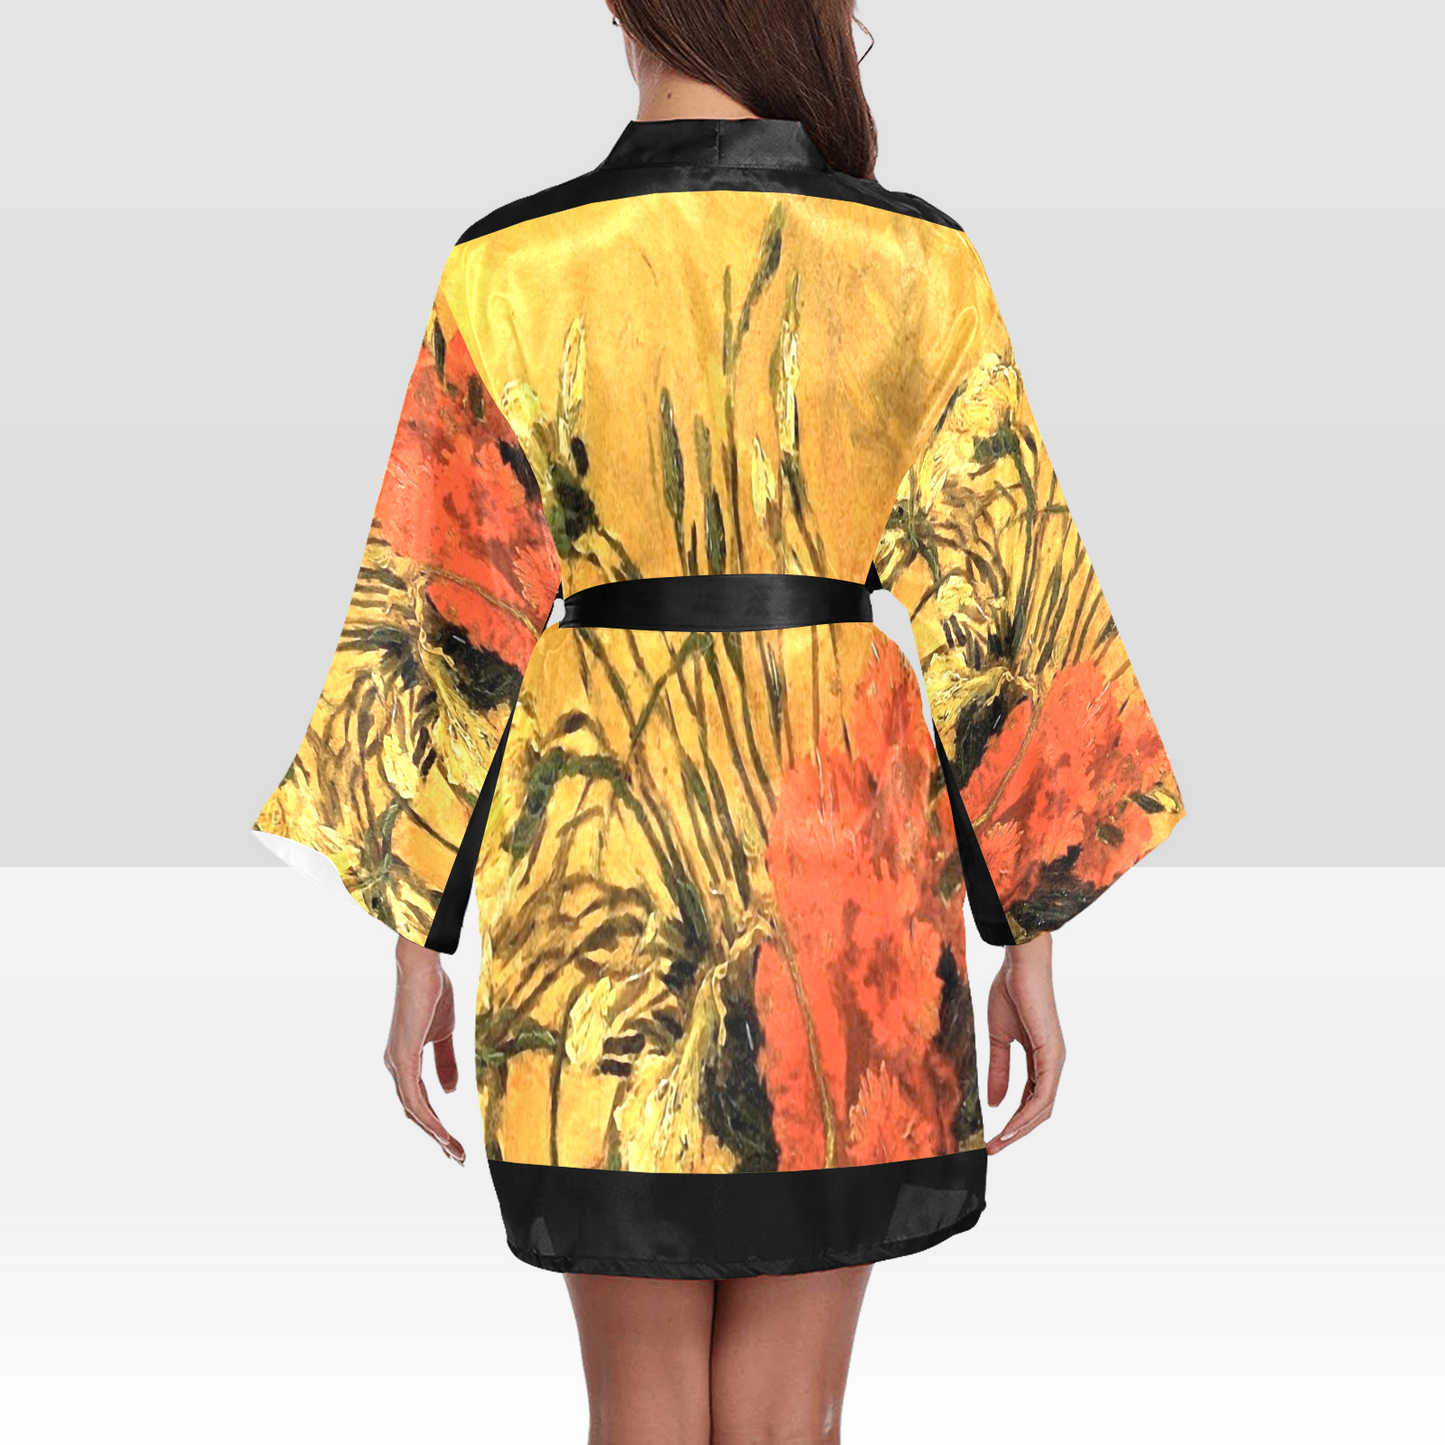 Vintage Floral Kimono Robe, Black or White Trim, Sizes XS to 2XL, Design 61